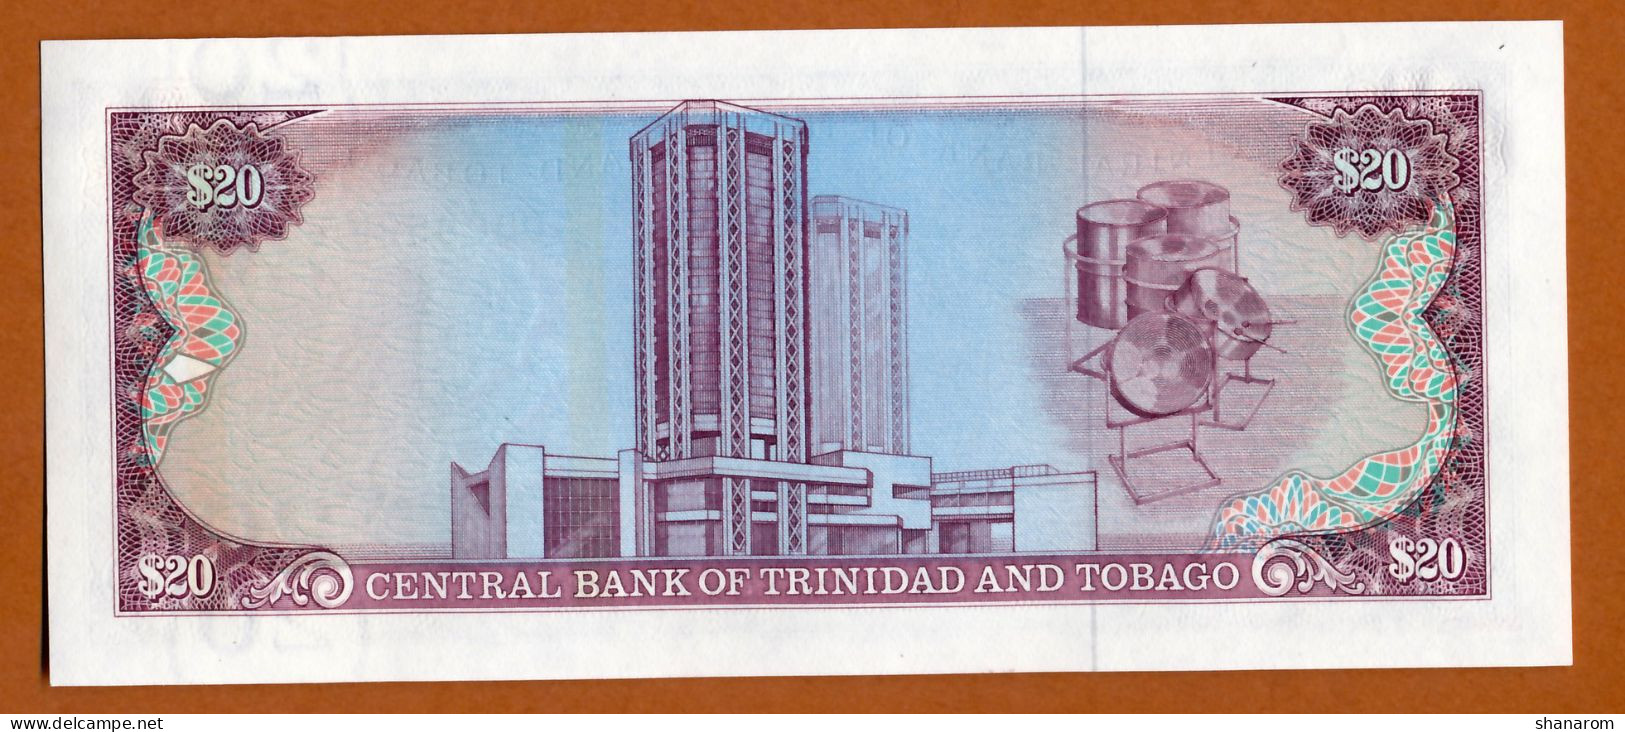 1985 // TRINIDAD AND TOBAGO // CENTRAL BANK // TWENTY DOLLARS // SPL - AU - Trinidad Y Tobago